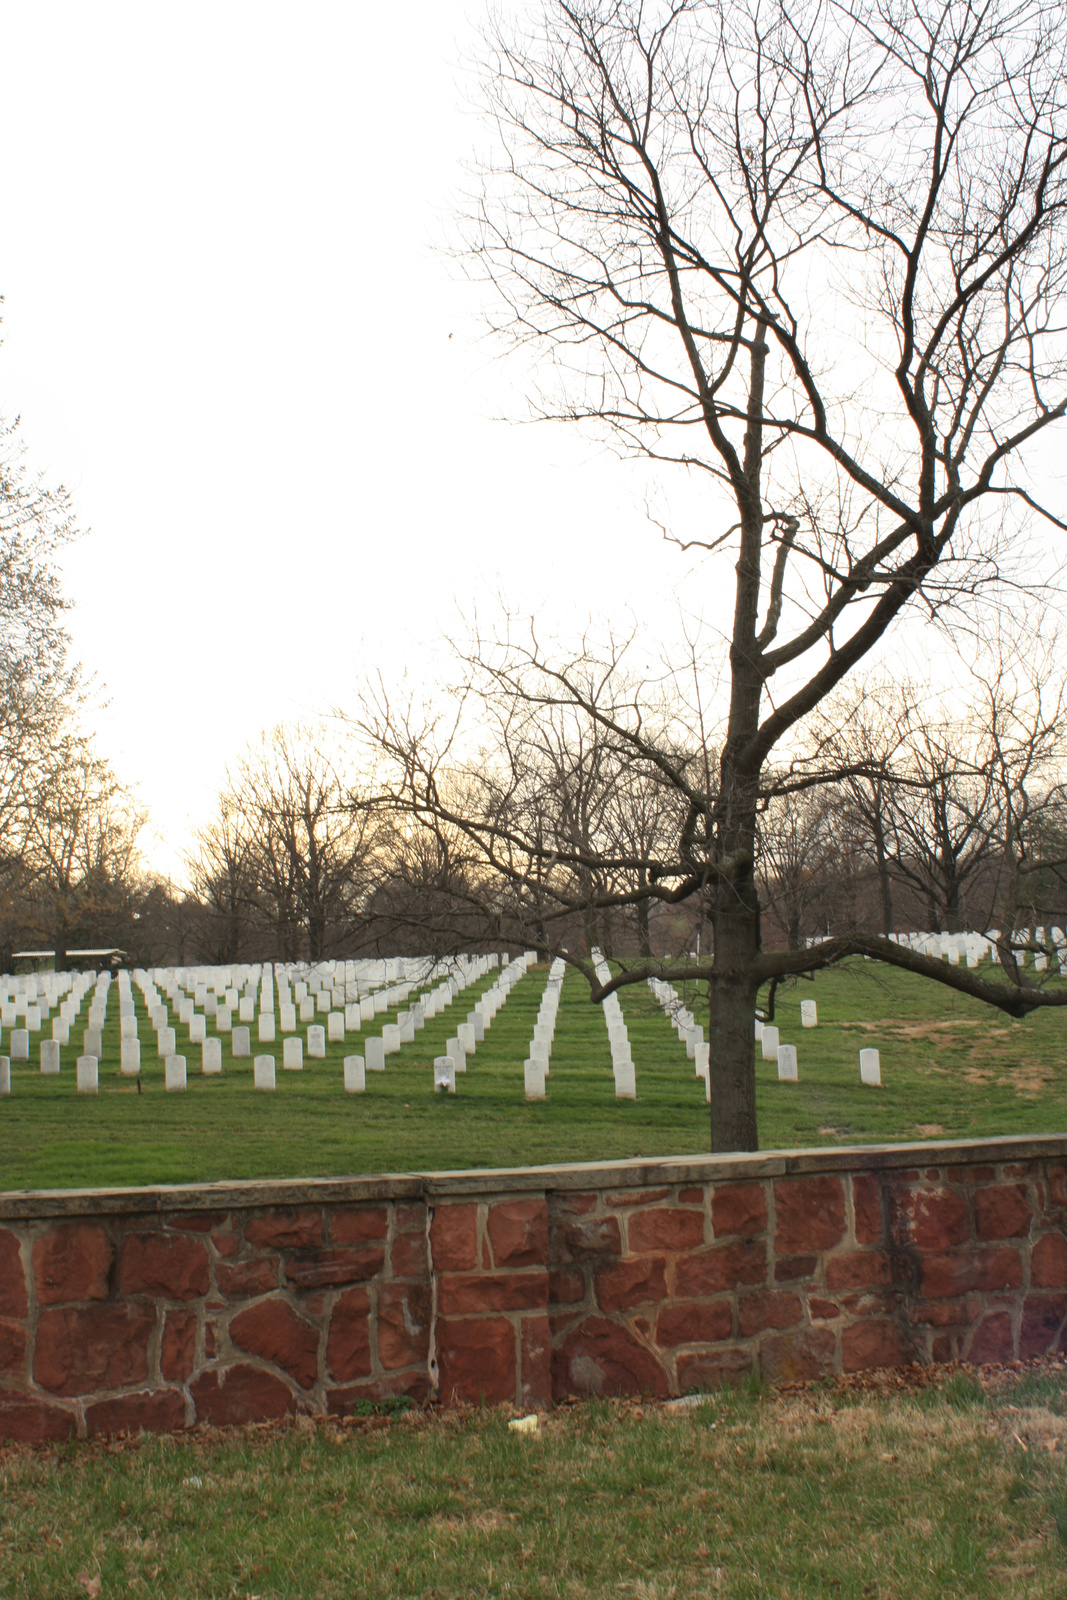 The Arlington Cemetery